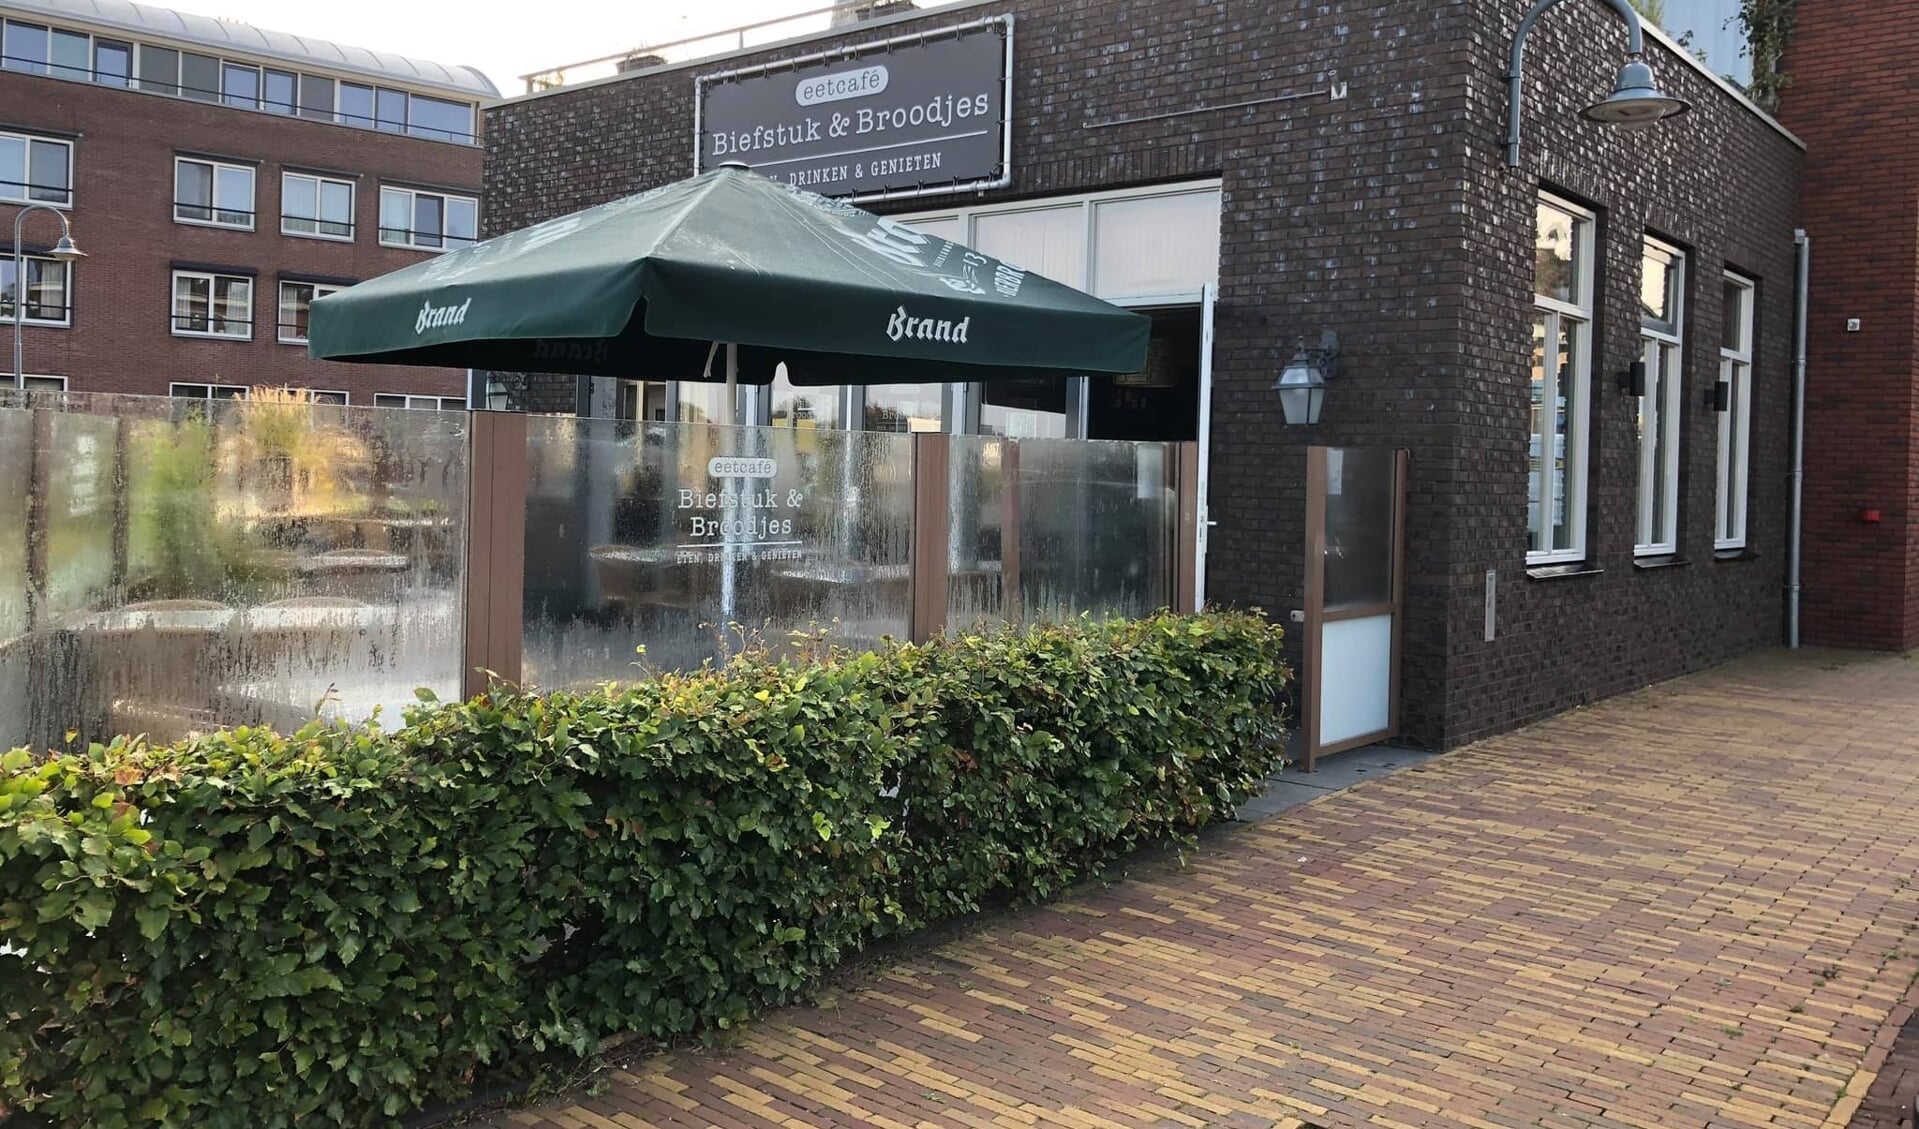 Eetcafé Biefstuk & Broodjes in Ouderkerk sluit de deuren.